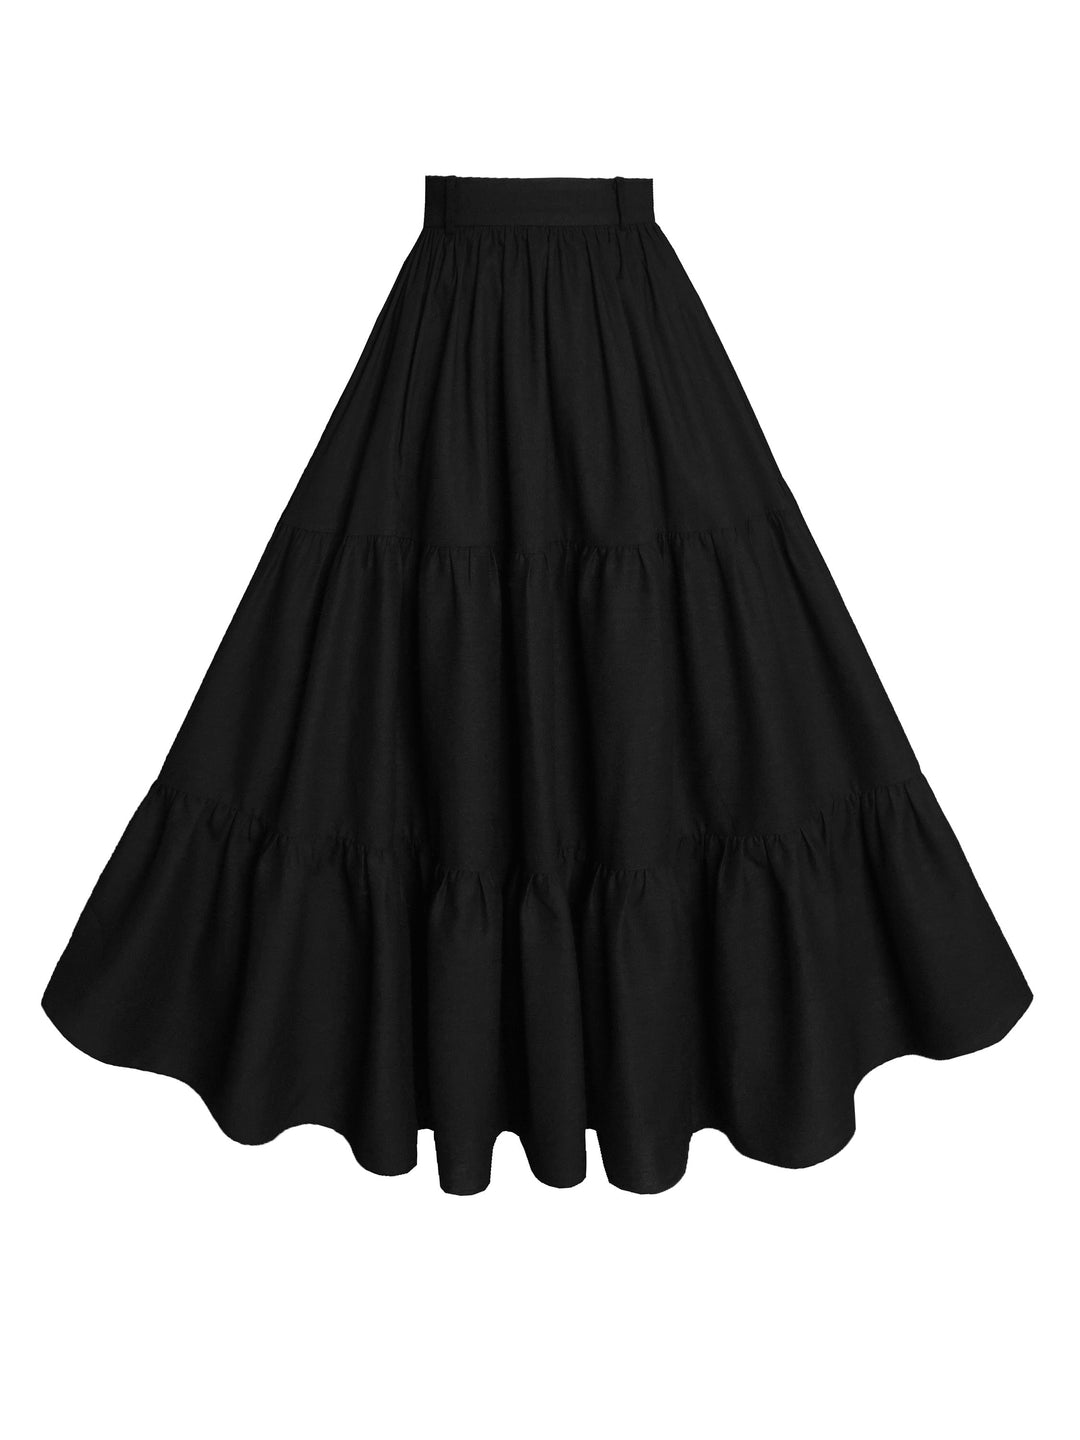 MTO - Pippa Skirt in Midnight Black Linen